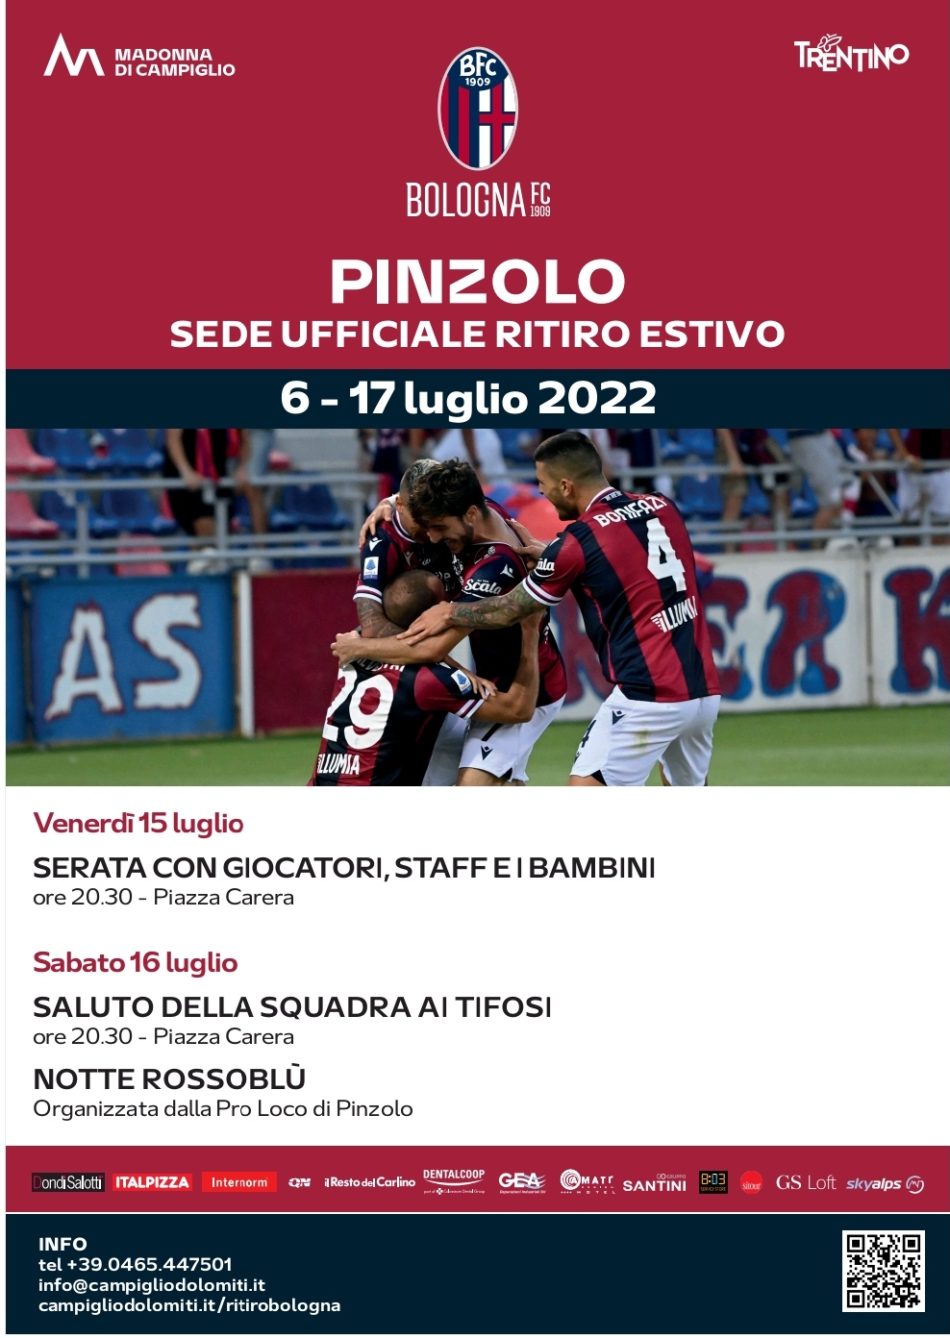 Pinzolo 15-16 luglio: Il Bologna Calcio in piazza Carera